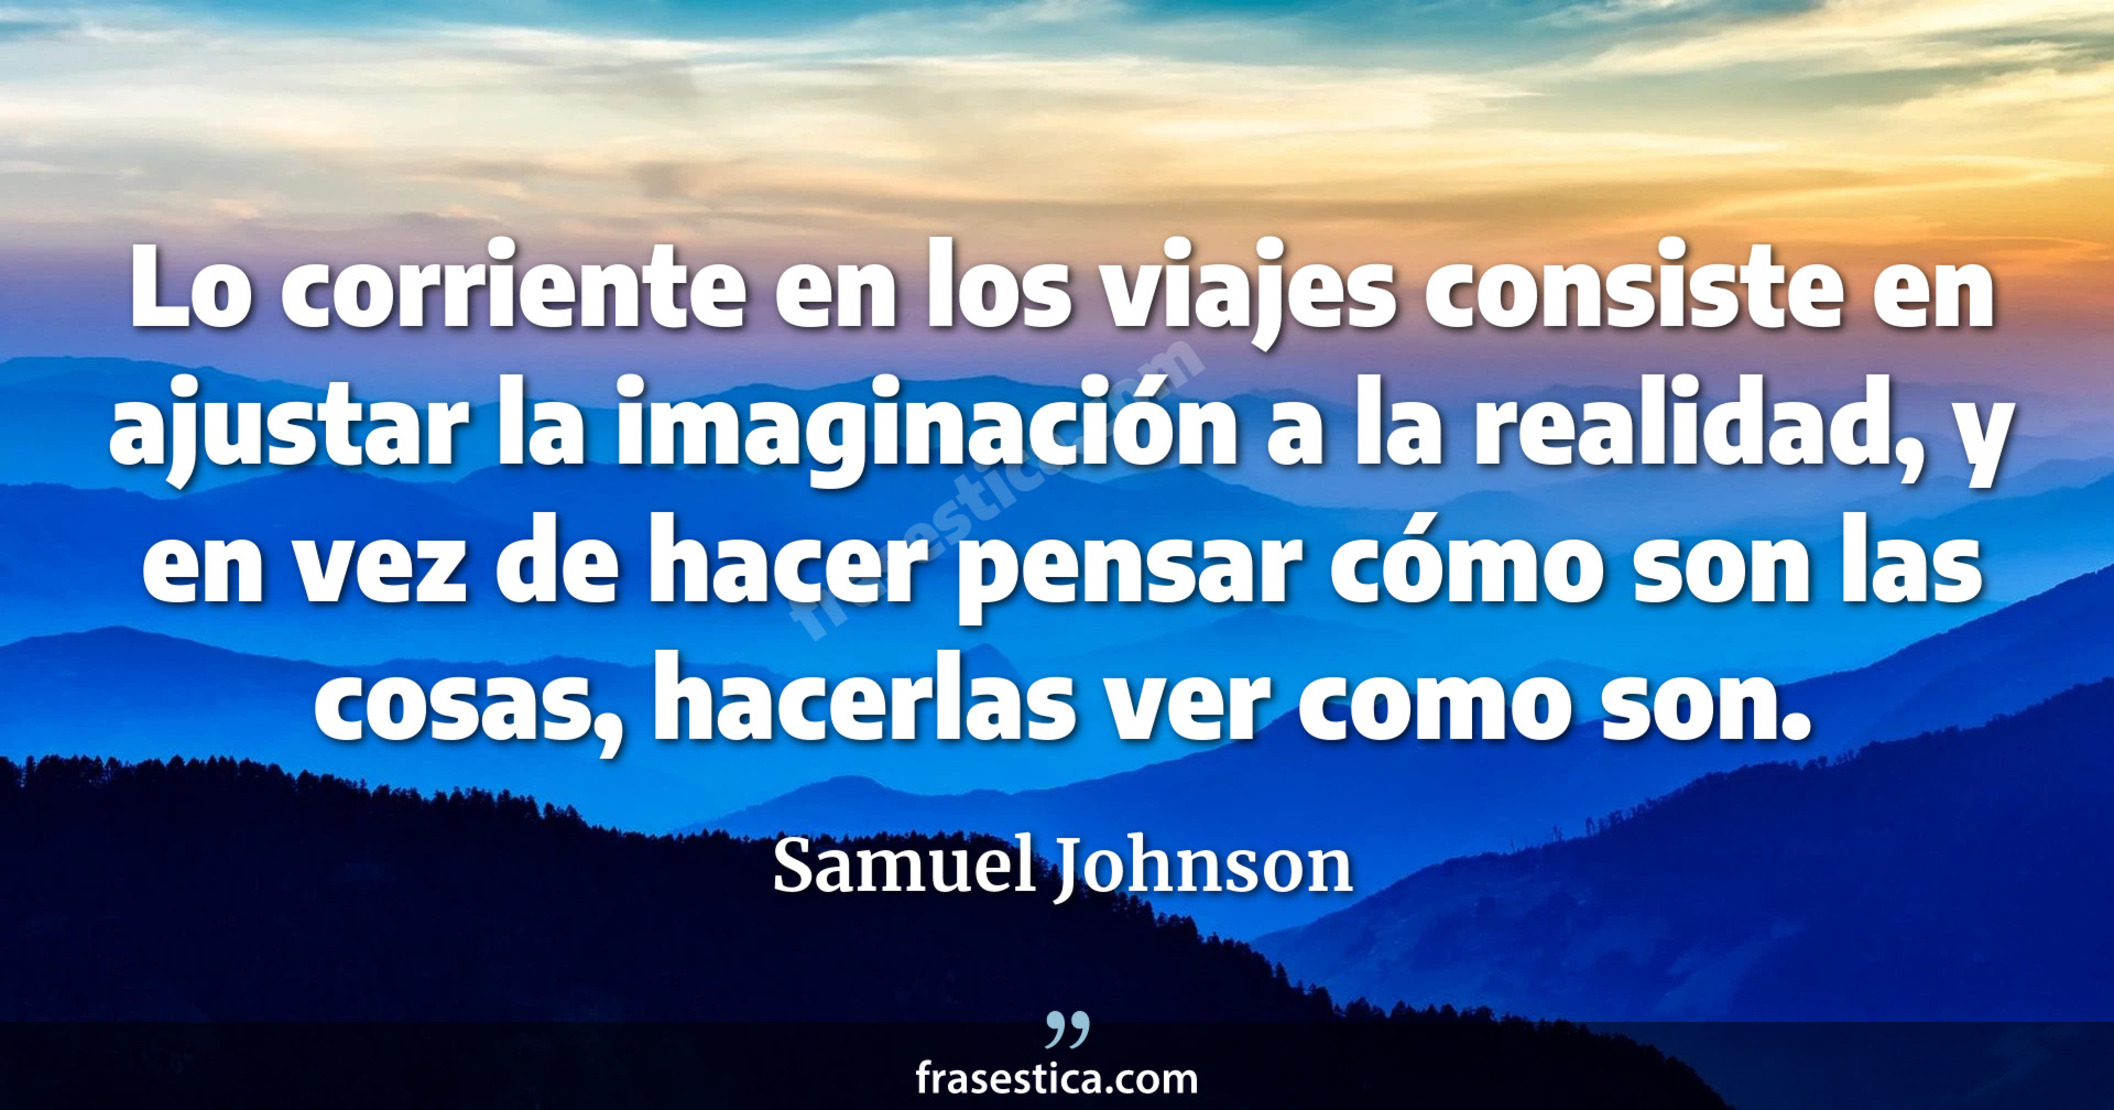 Lo corriente en los viajes consiste en ajustar la imaginación a la realidad, y en vez de hacer pensar cómo son las cosas, hacerlas ver como son. - Samuel Johnson